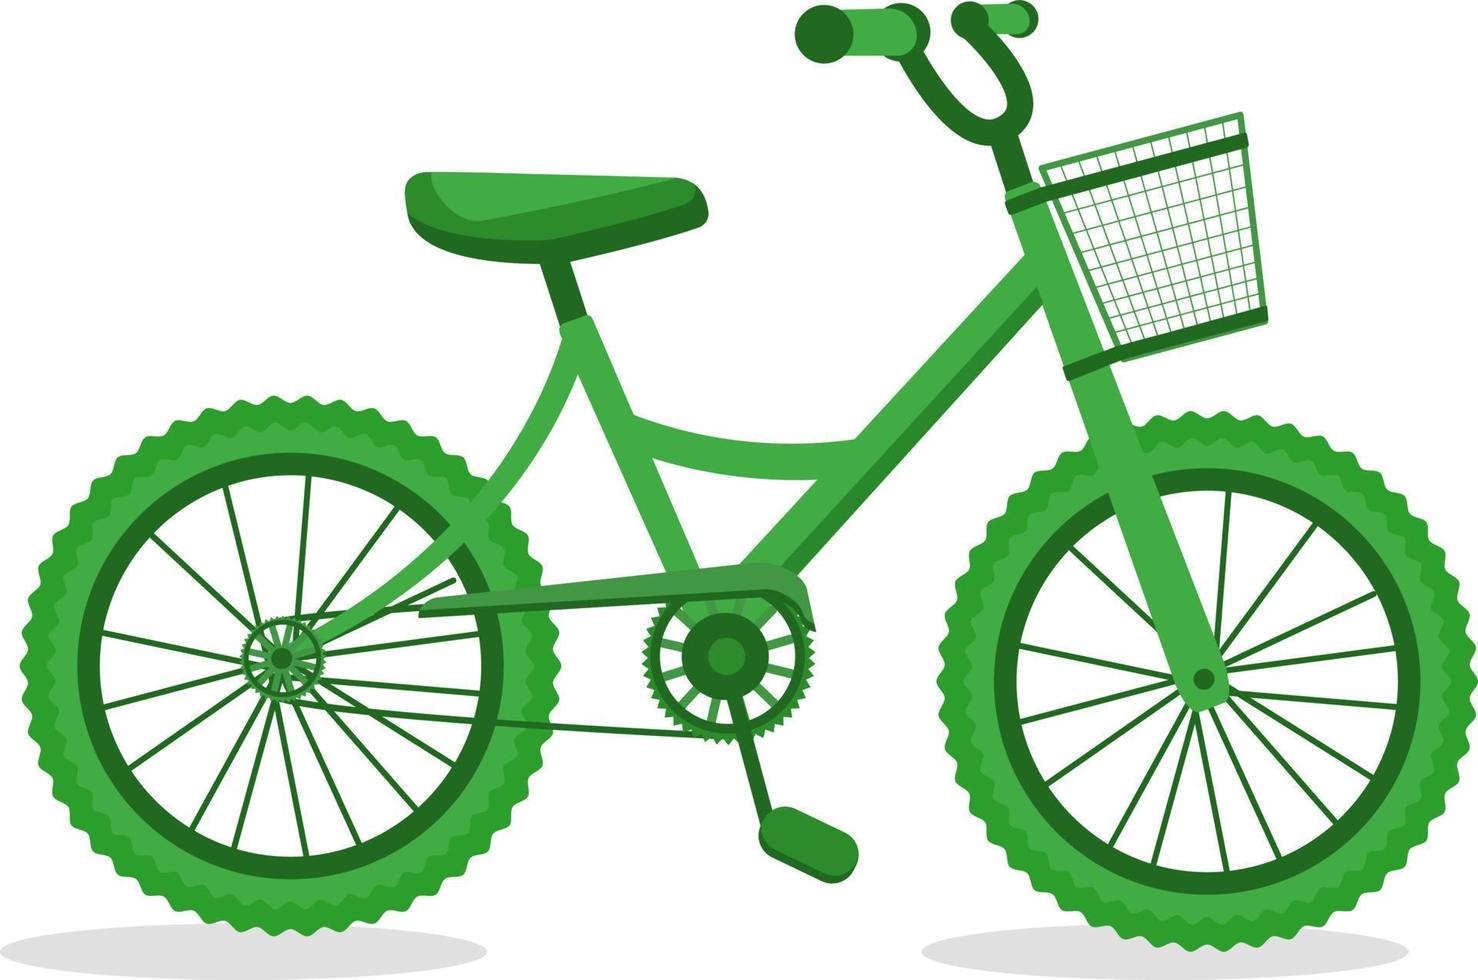 vá de bicicleta para uma viagem verde. símbolo de tecnologia ecológica do futuro. linda bicicleta de cor verde para as pessoas e proteção do meio ambiente. ilustração isolada no fundo branco. ilustração vetorial. vetor